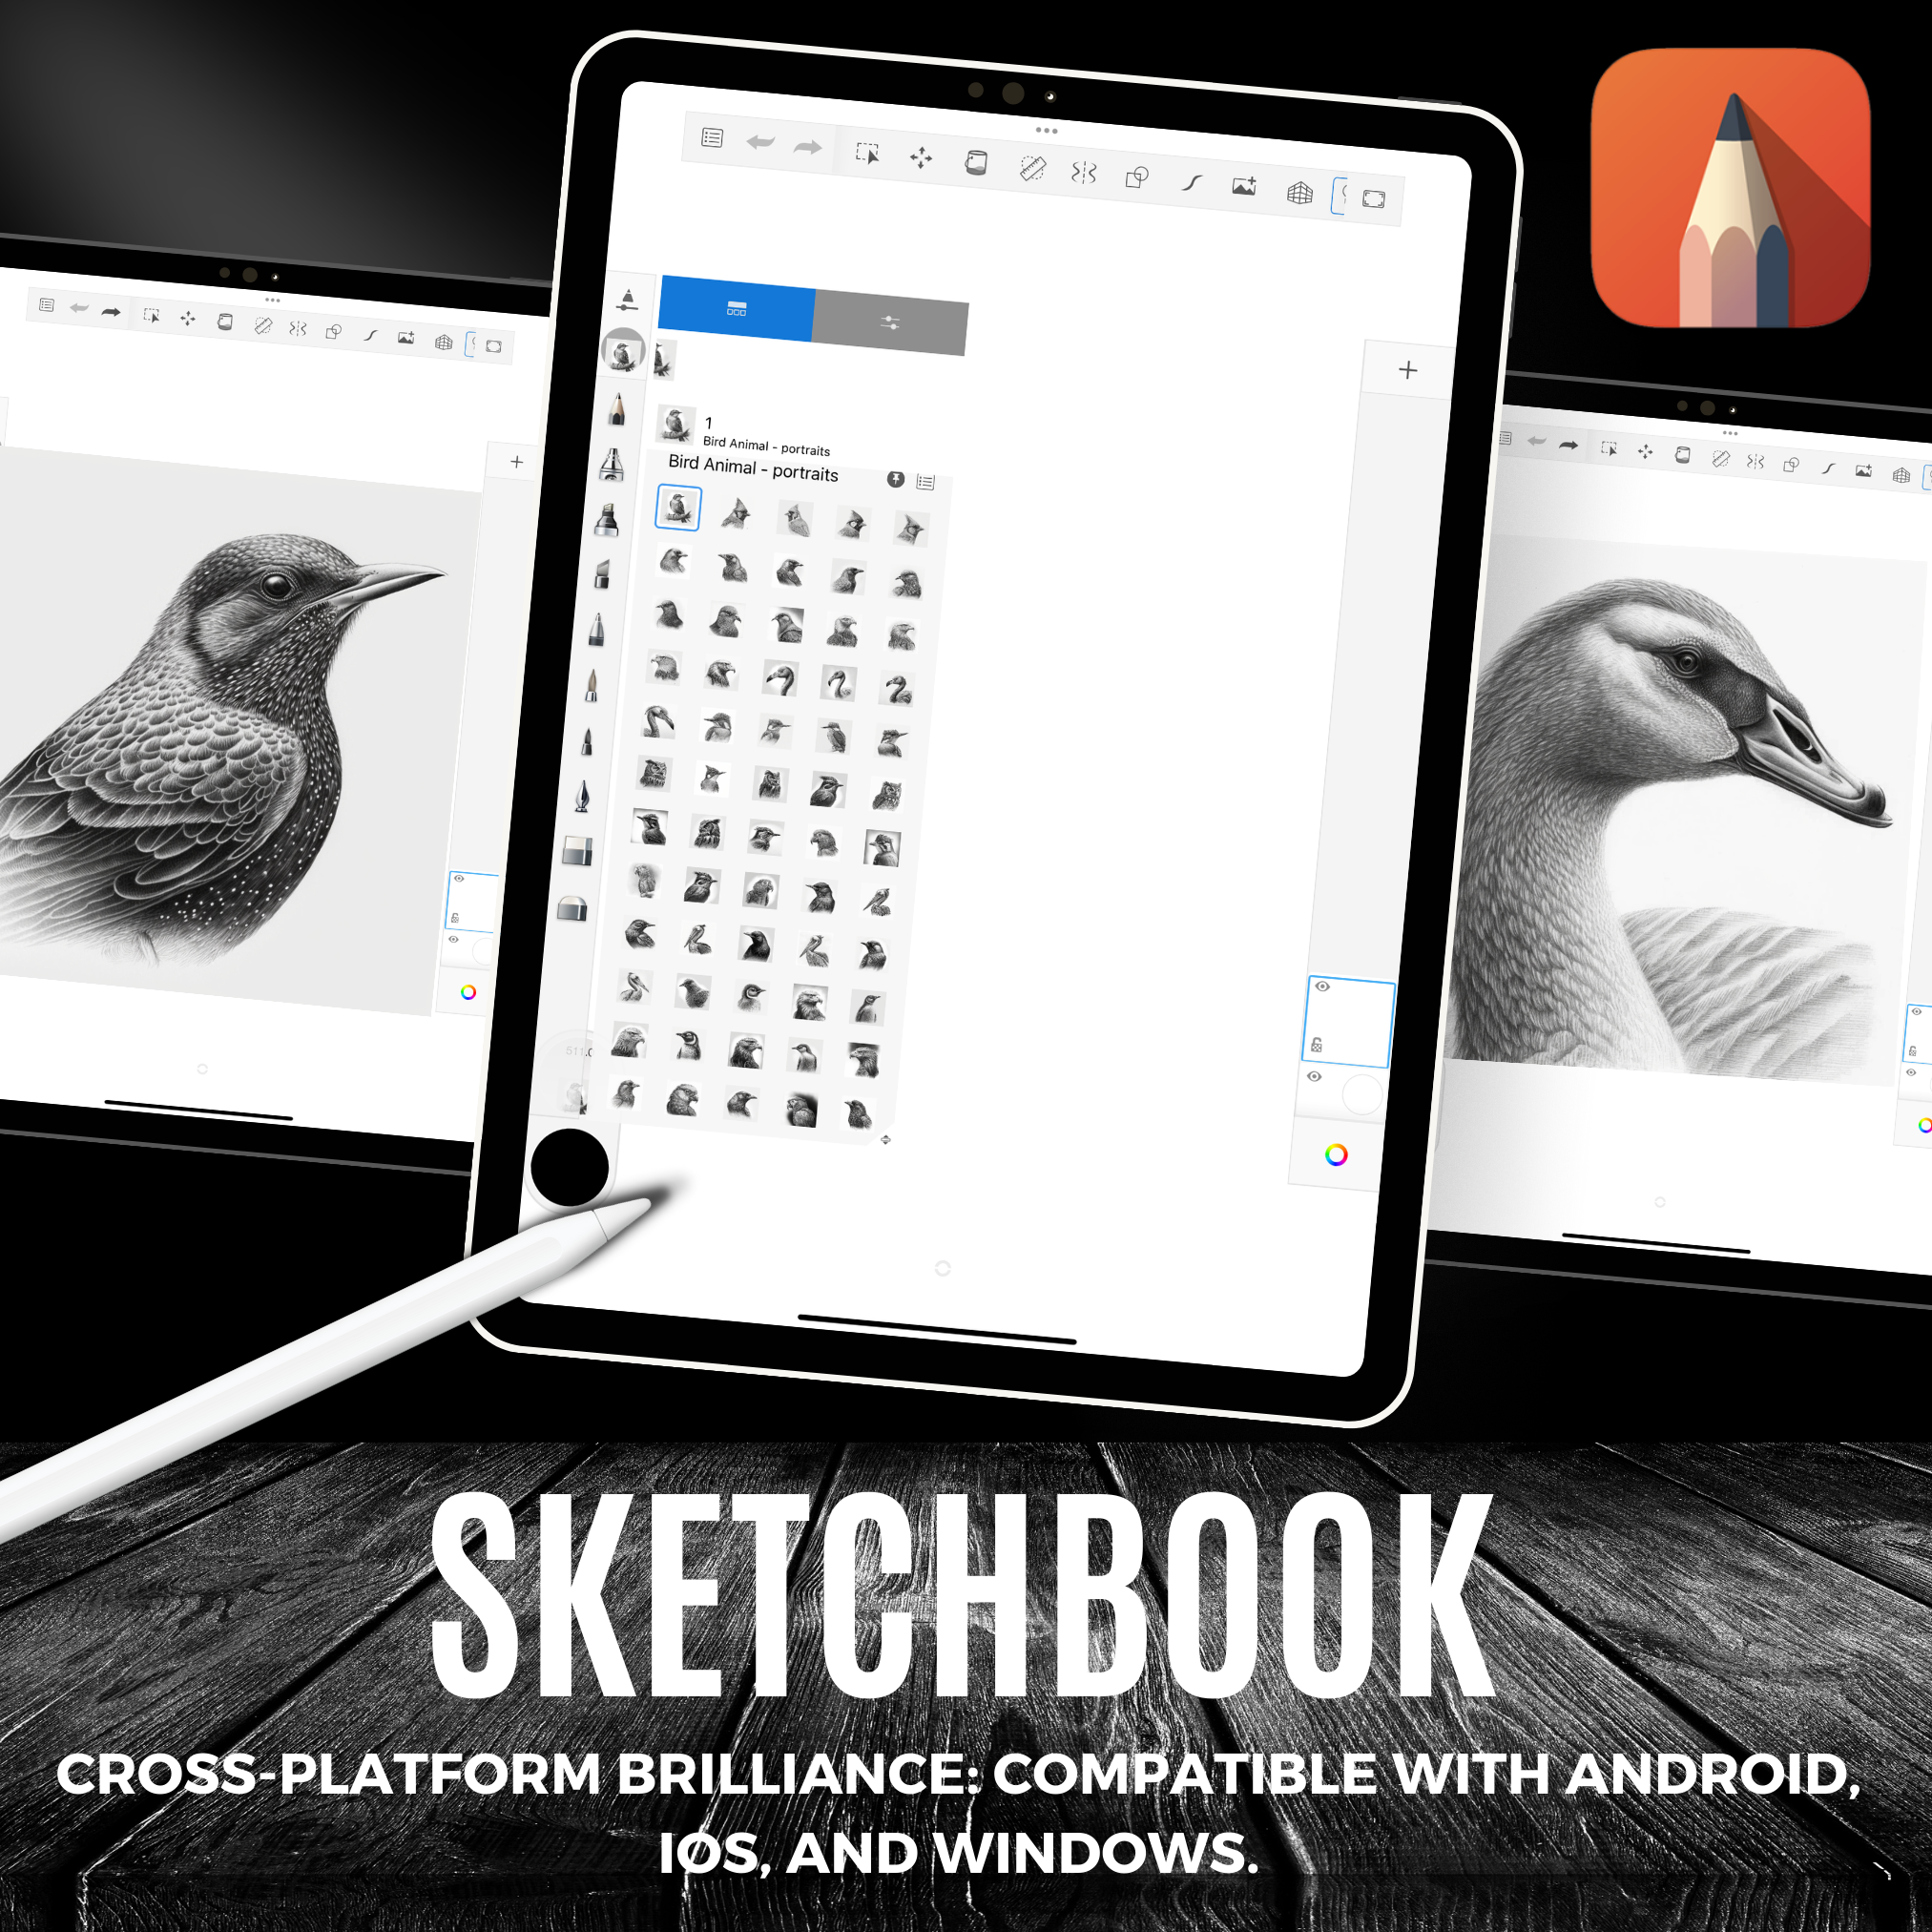 Digitale Referenzdesignsammlung „Birds“: 100 Procreate- und Skizzenbuchbilder